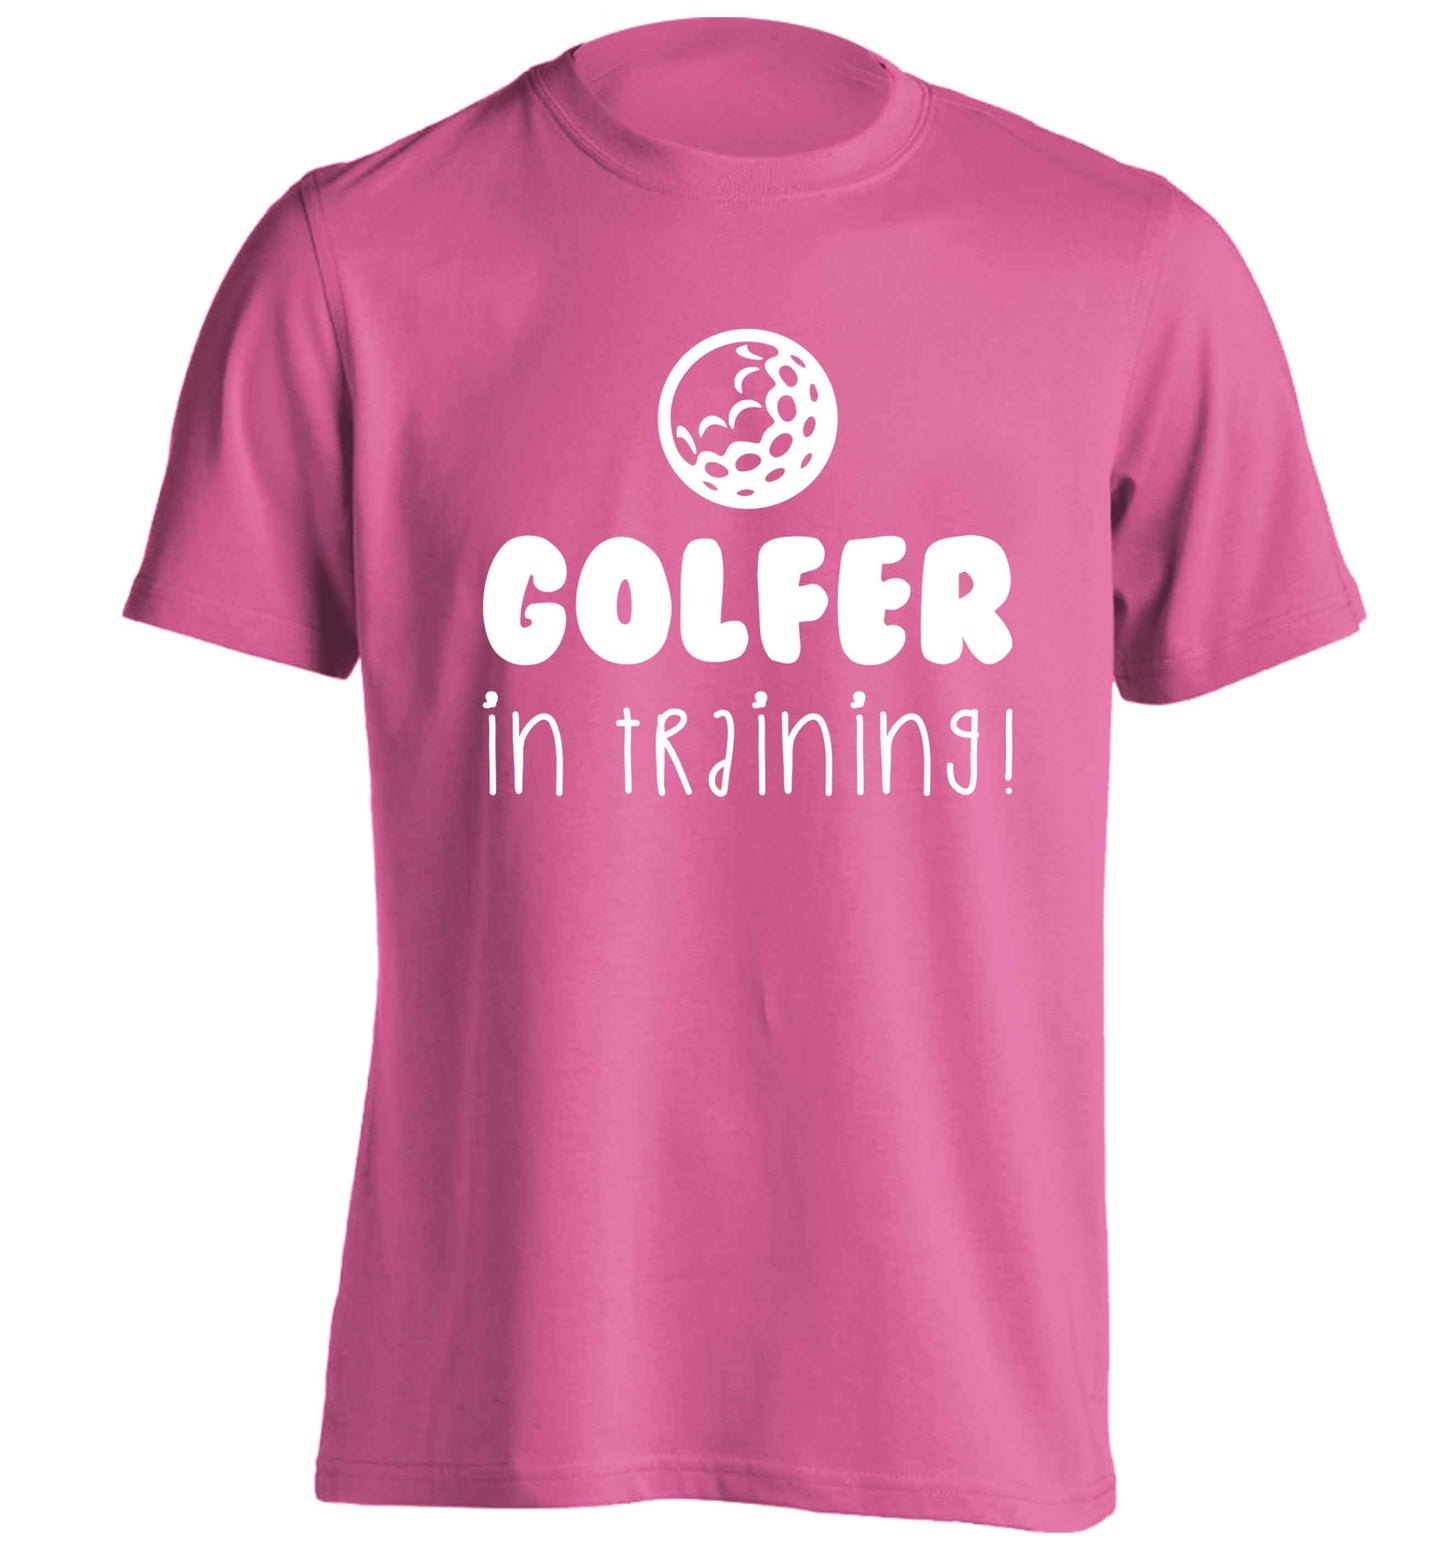 Golfer in training adults unisex pink Tshirt 2XL